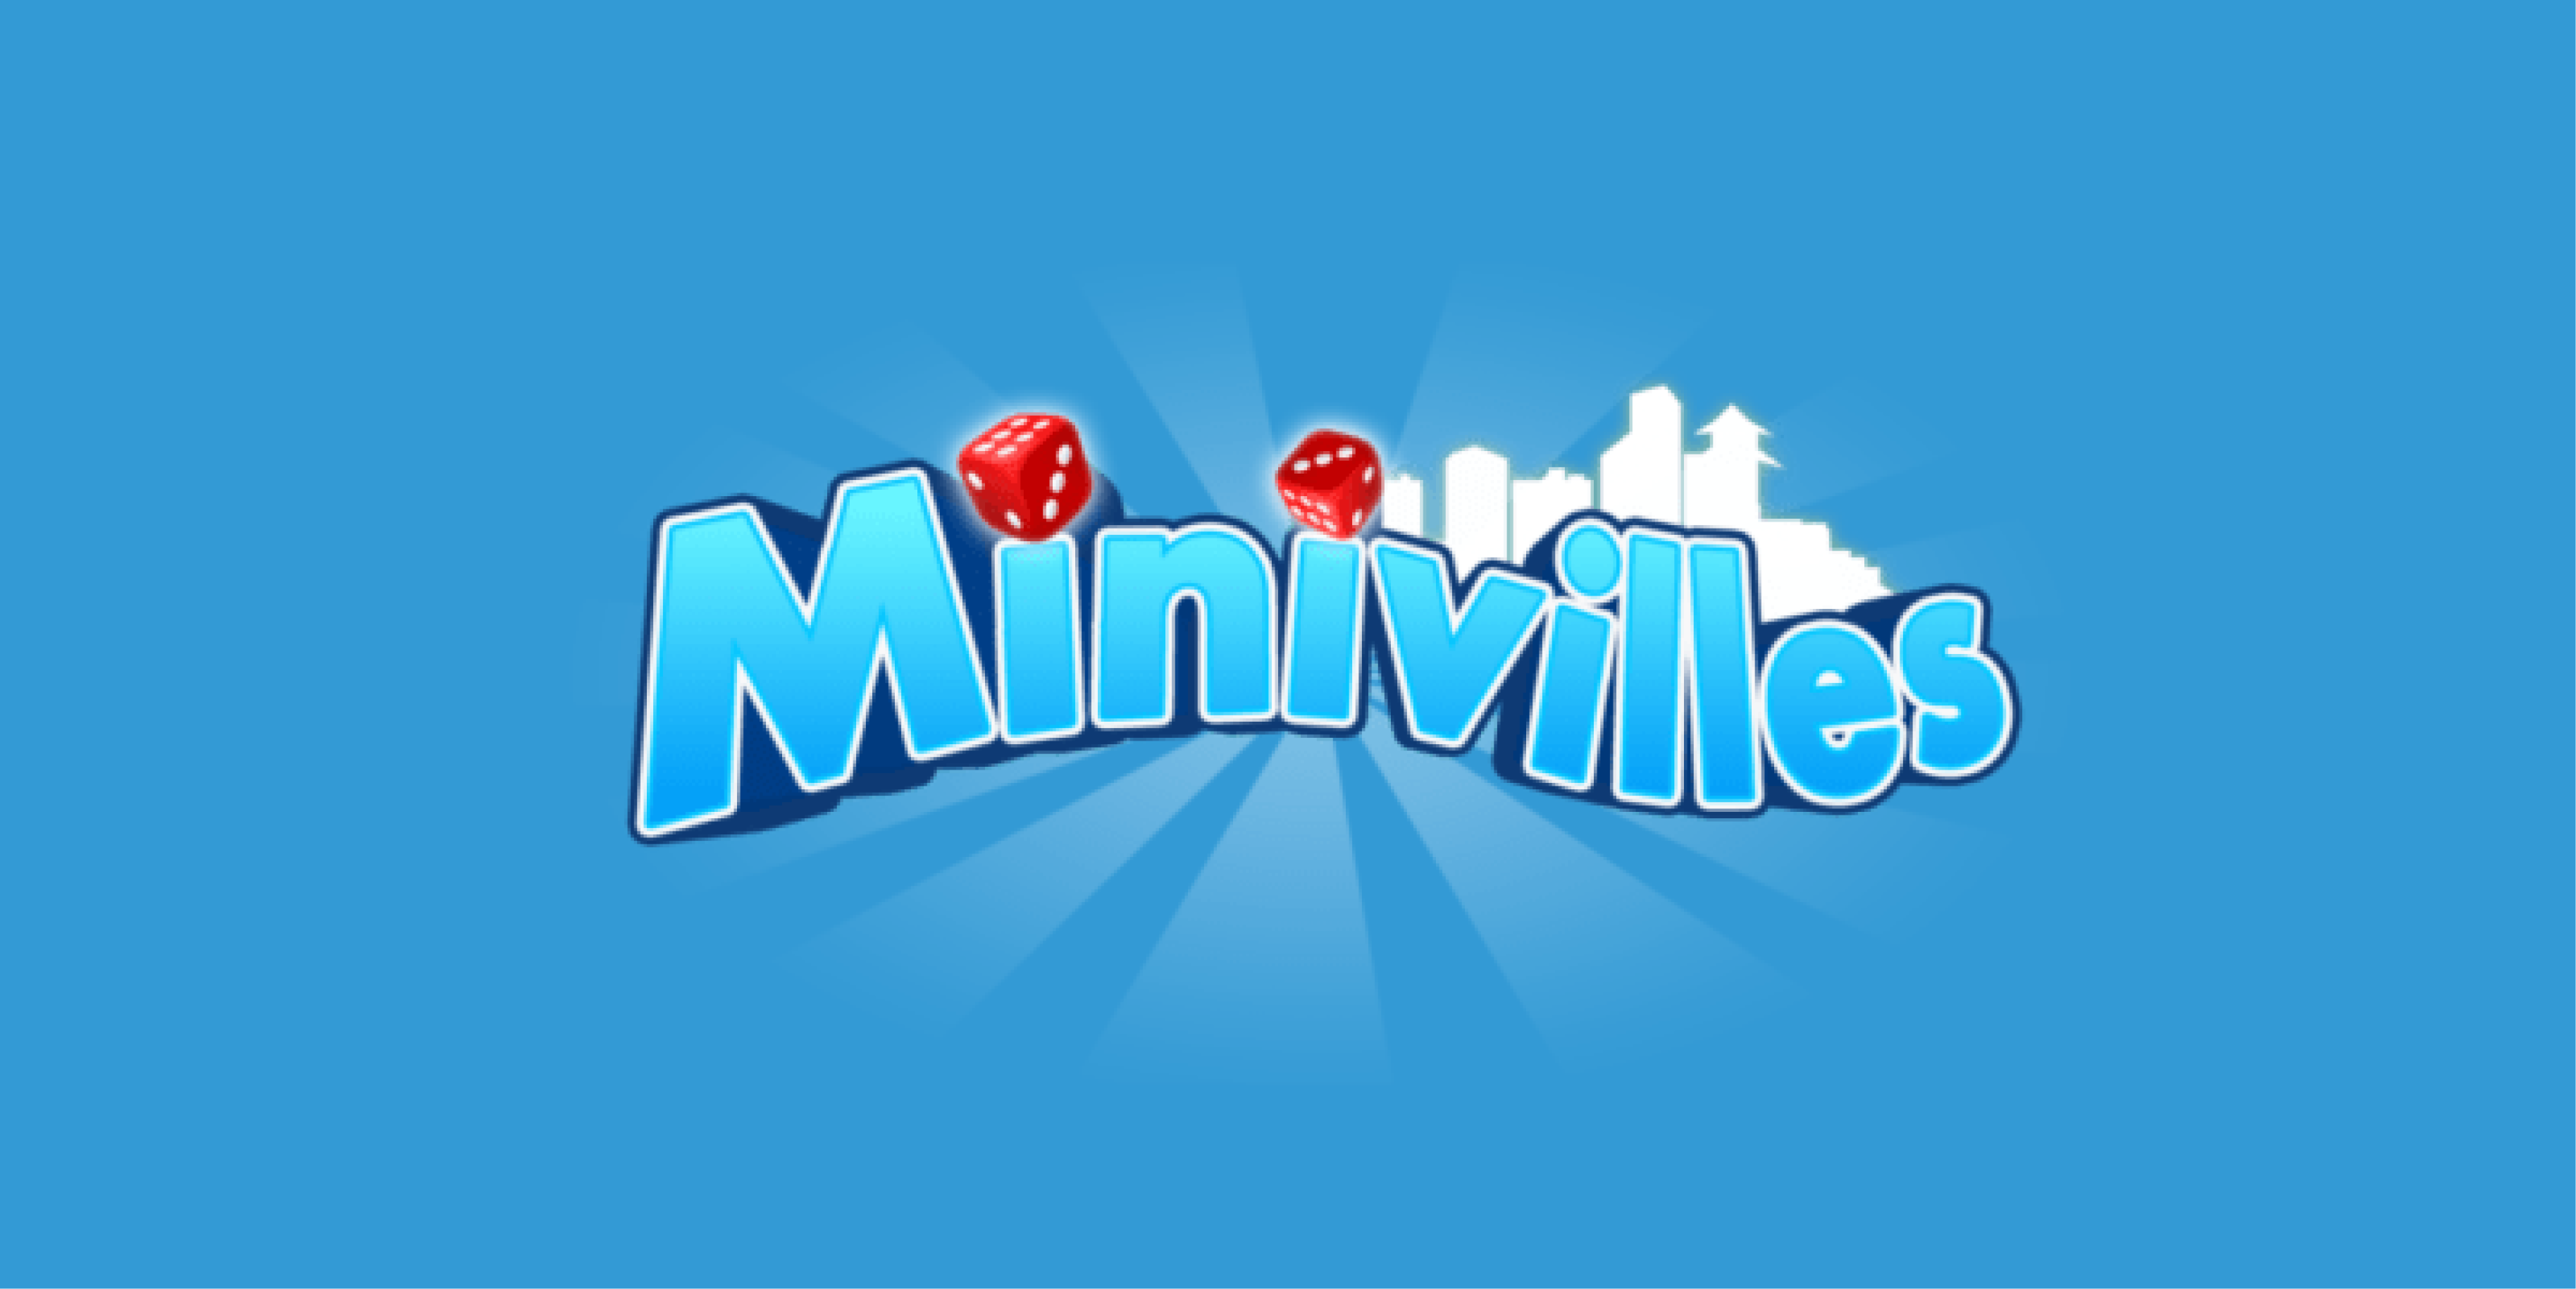 Miniville